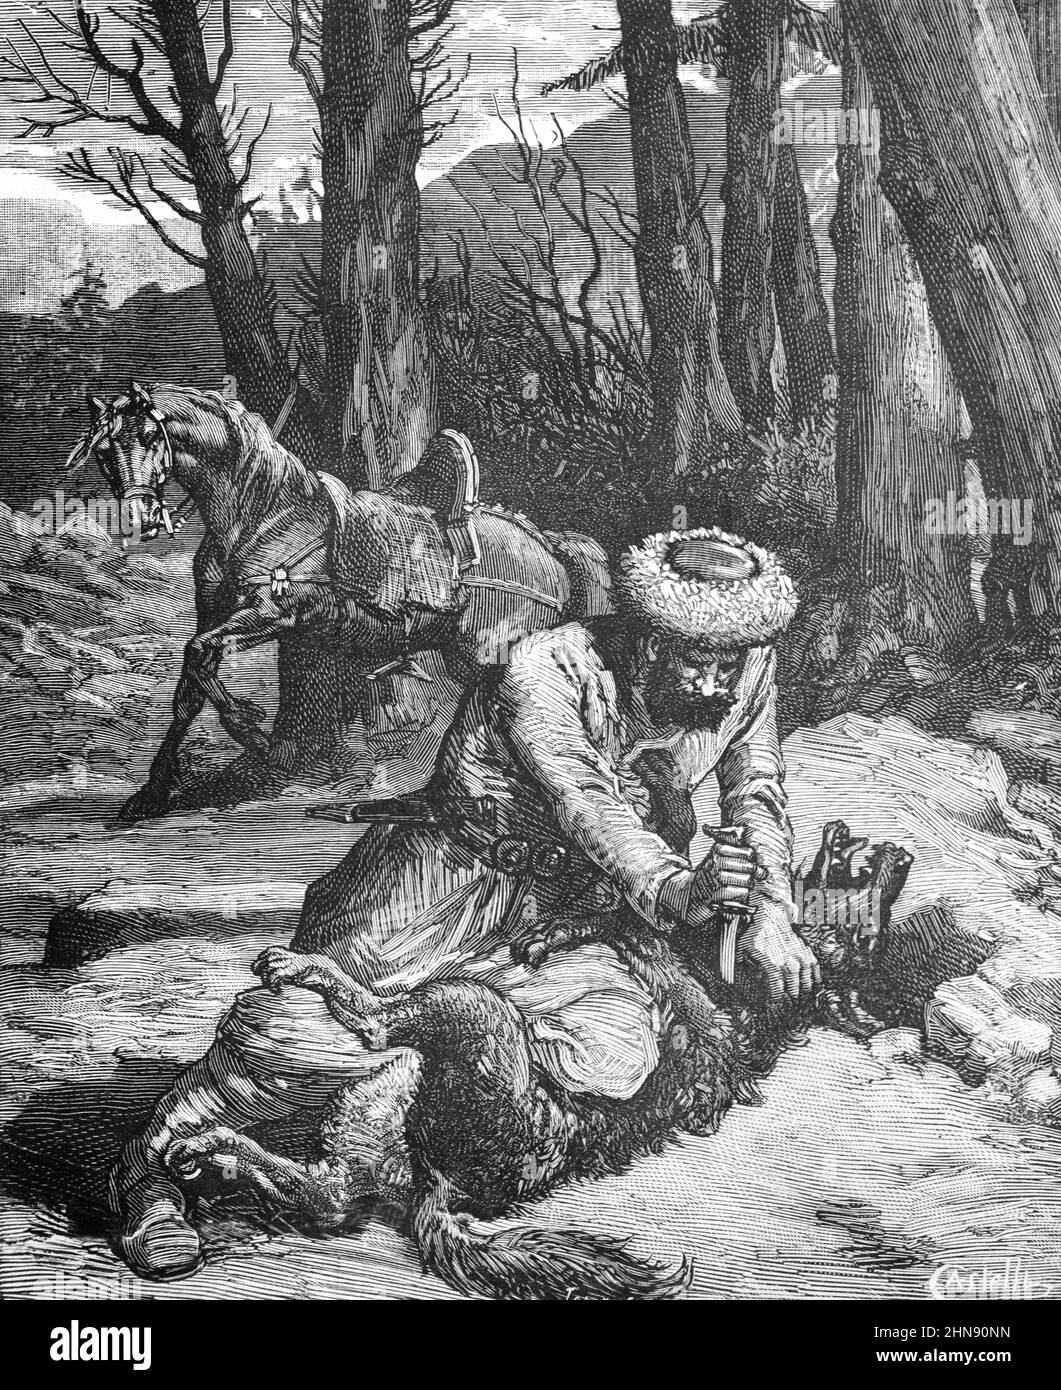 Cossack caccia lupo grigio, Canis lupus, o uccisione lupo in Russia. Illustrazione o incisione vintage 1882 Foto Stock